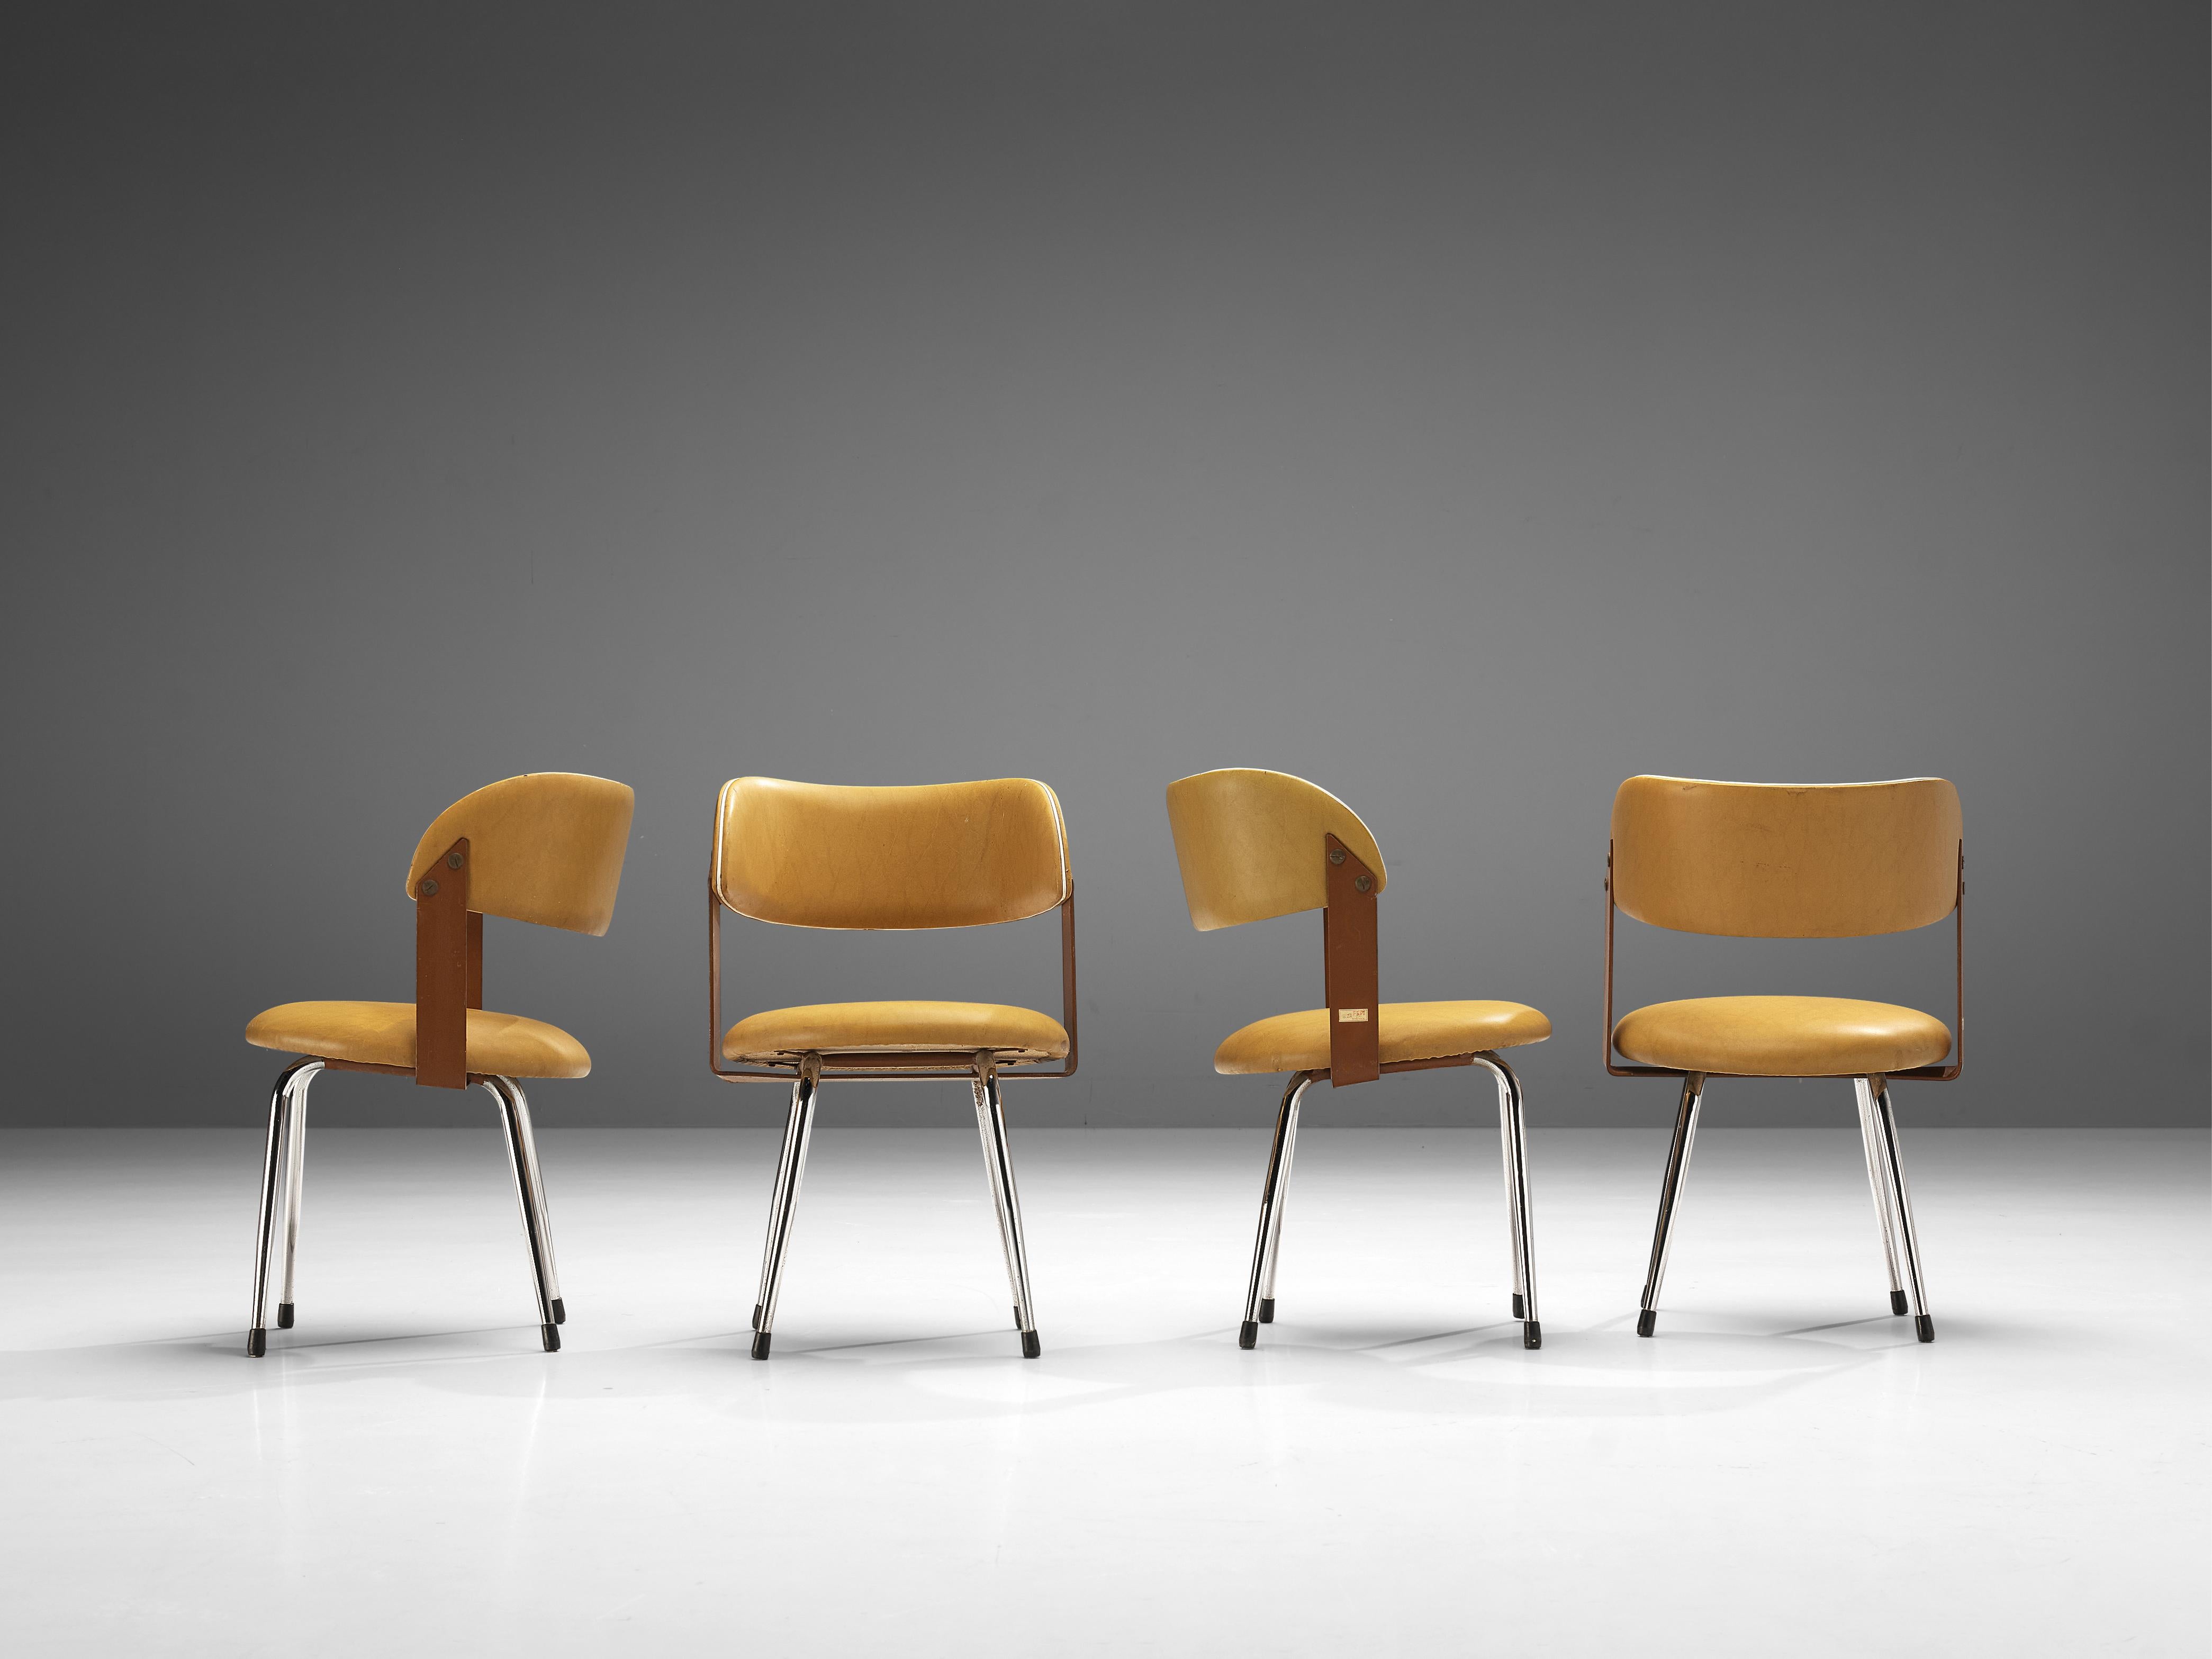 Esszimmerstühle, gelbes Kunstleder, Chrom, Stahl, Italien, 1970er 

Bequeme italienische Esszimmerstühle aus gelbem Kunstleder. Die auffällige farbige Polsterung unterstreicht die runde Sitzform und die geschwungene Rückenlehne, die den Sessel